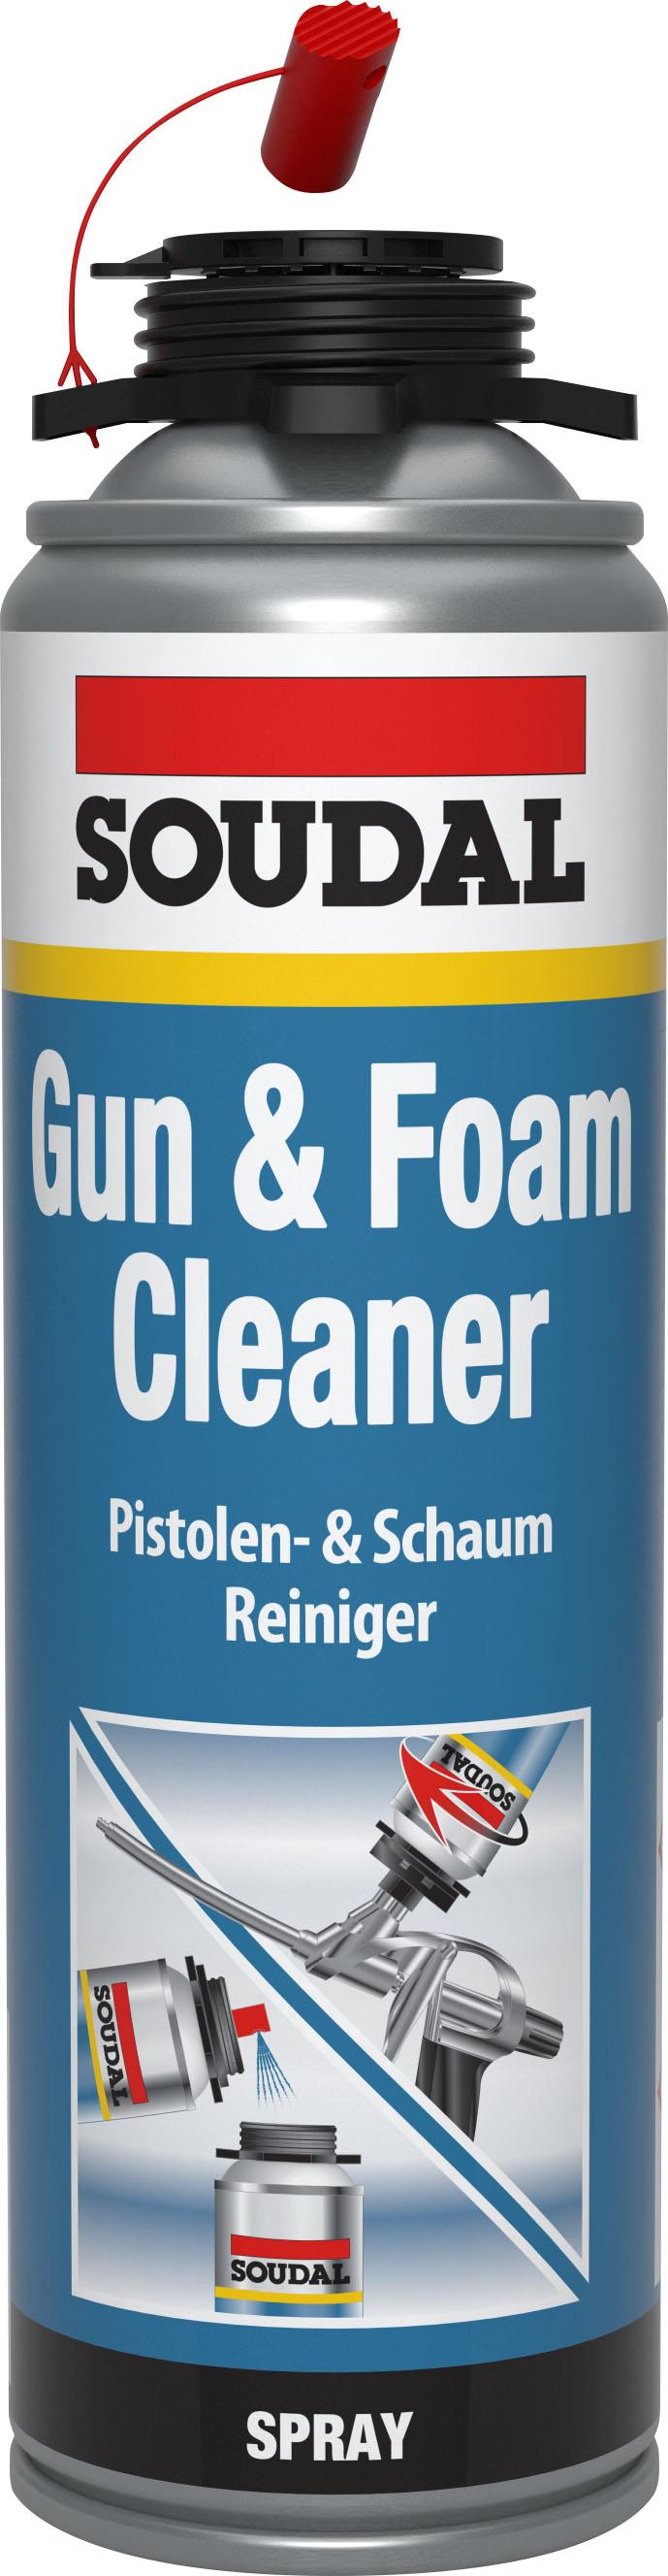 Soudal Gun & Foamcleaner - PISTOLEN & SCHAUMREINIGER 500ml